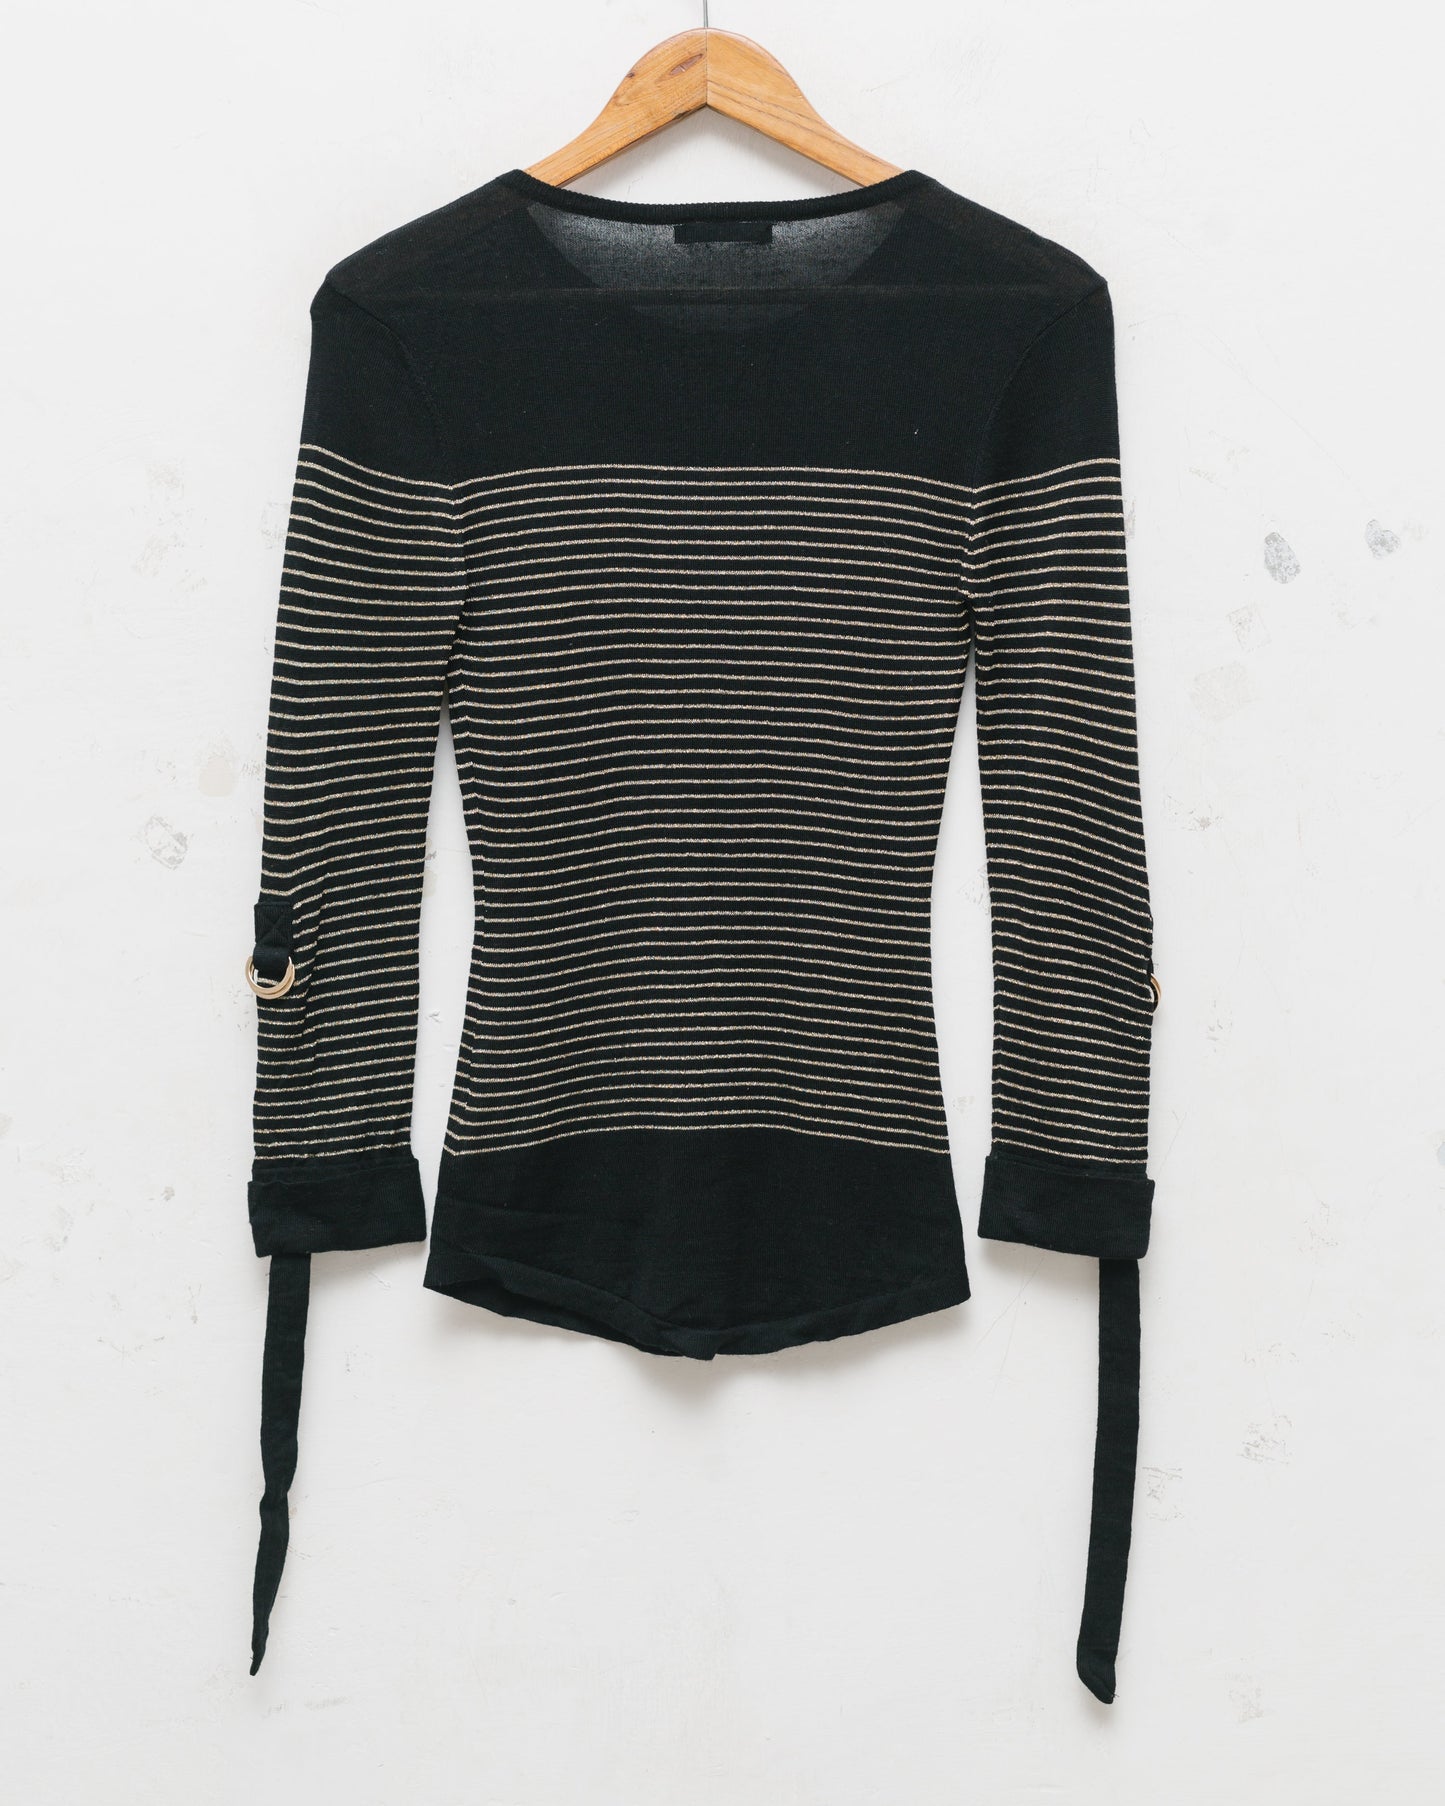 Balmain striped knit top